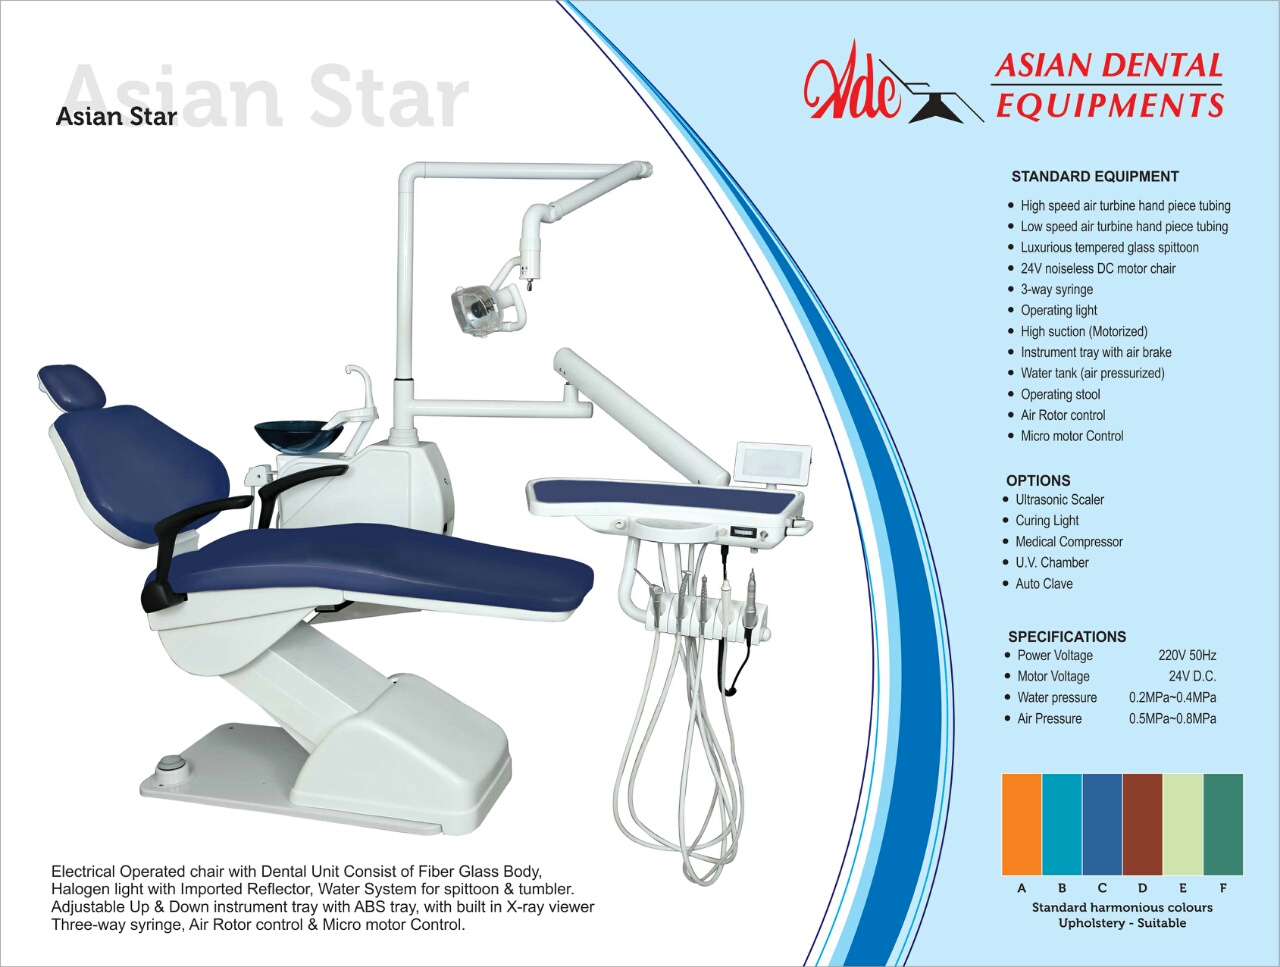 Asian Dental Equipments Asian Dental Dental Equipments Dental